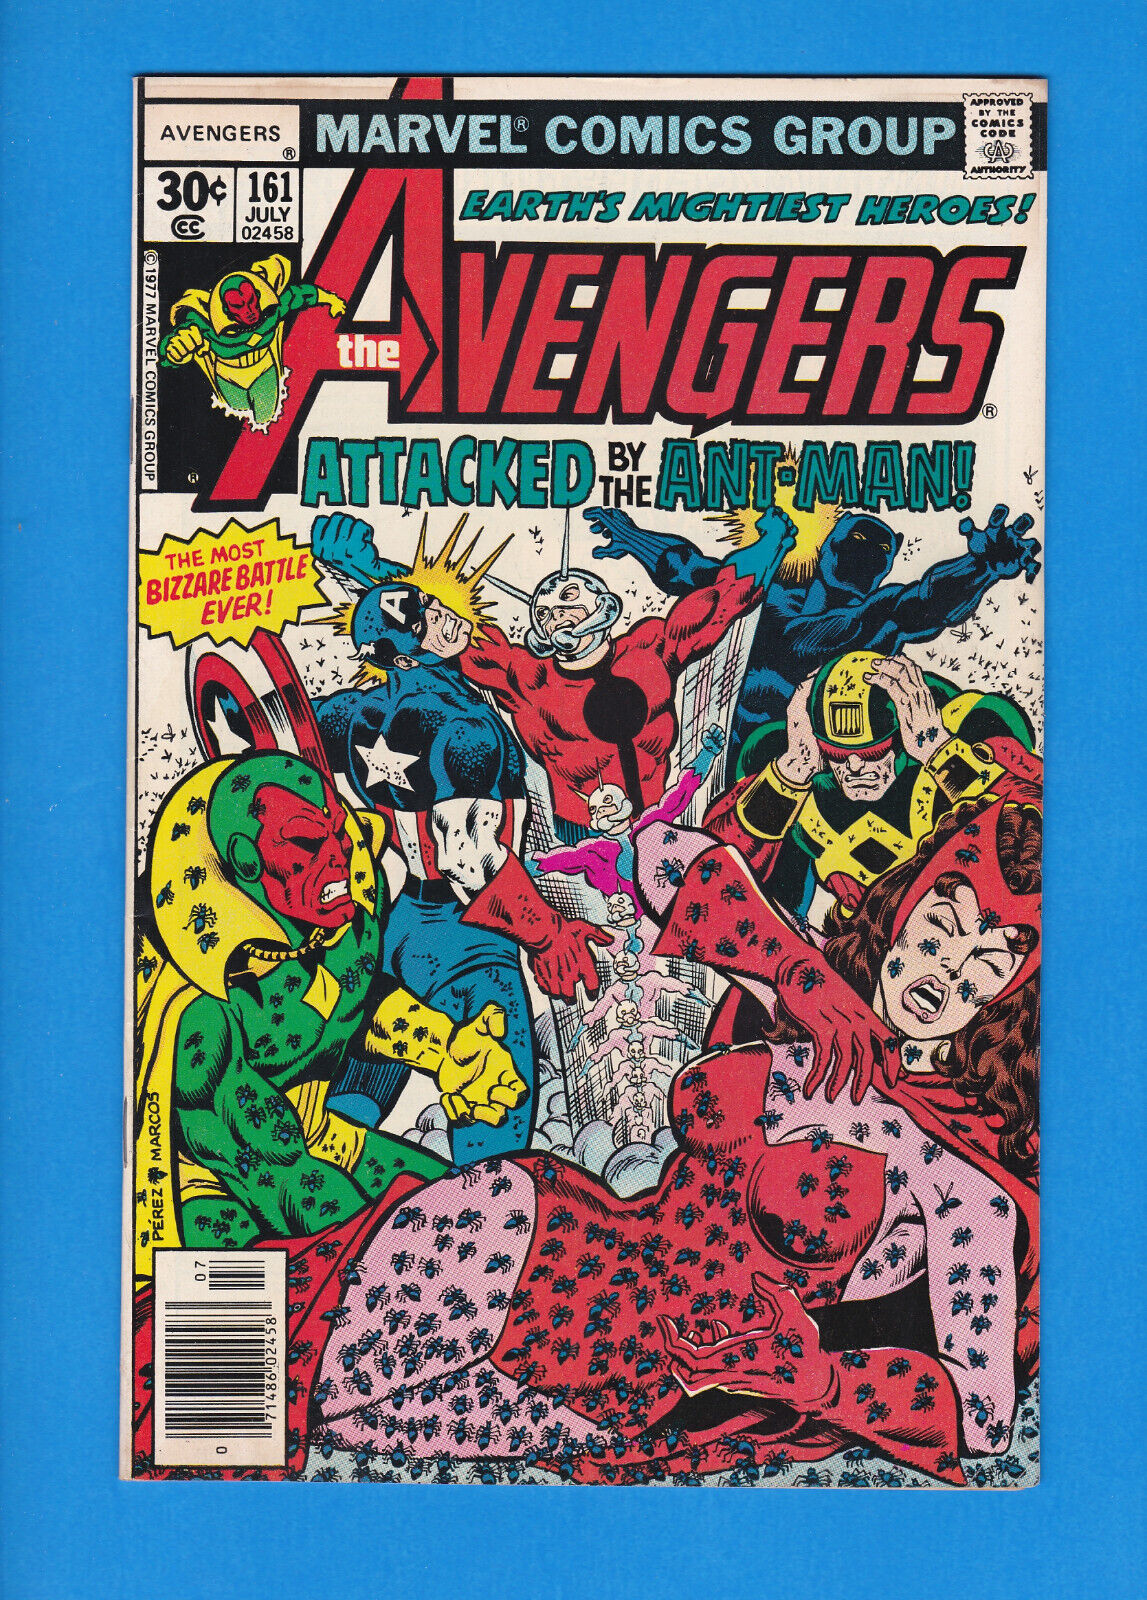 AVENGERS #161 Marvel 1977